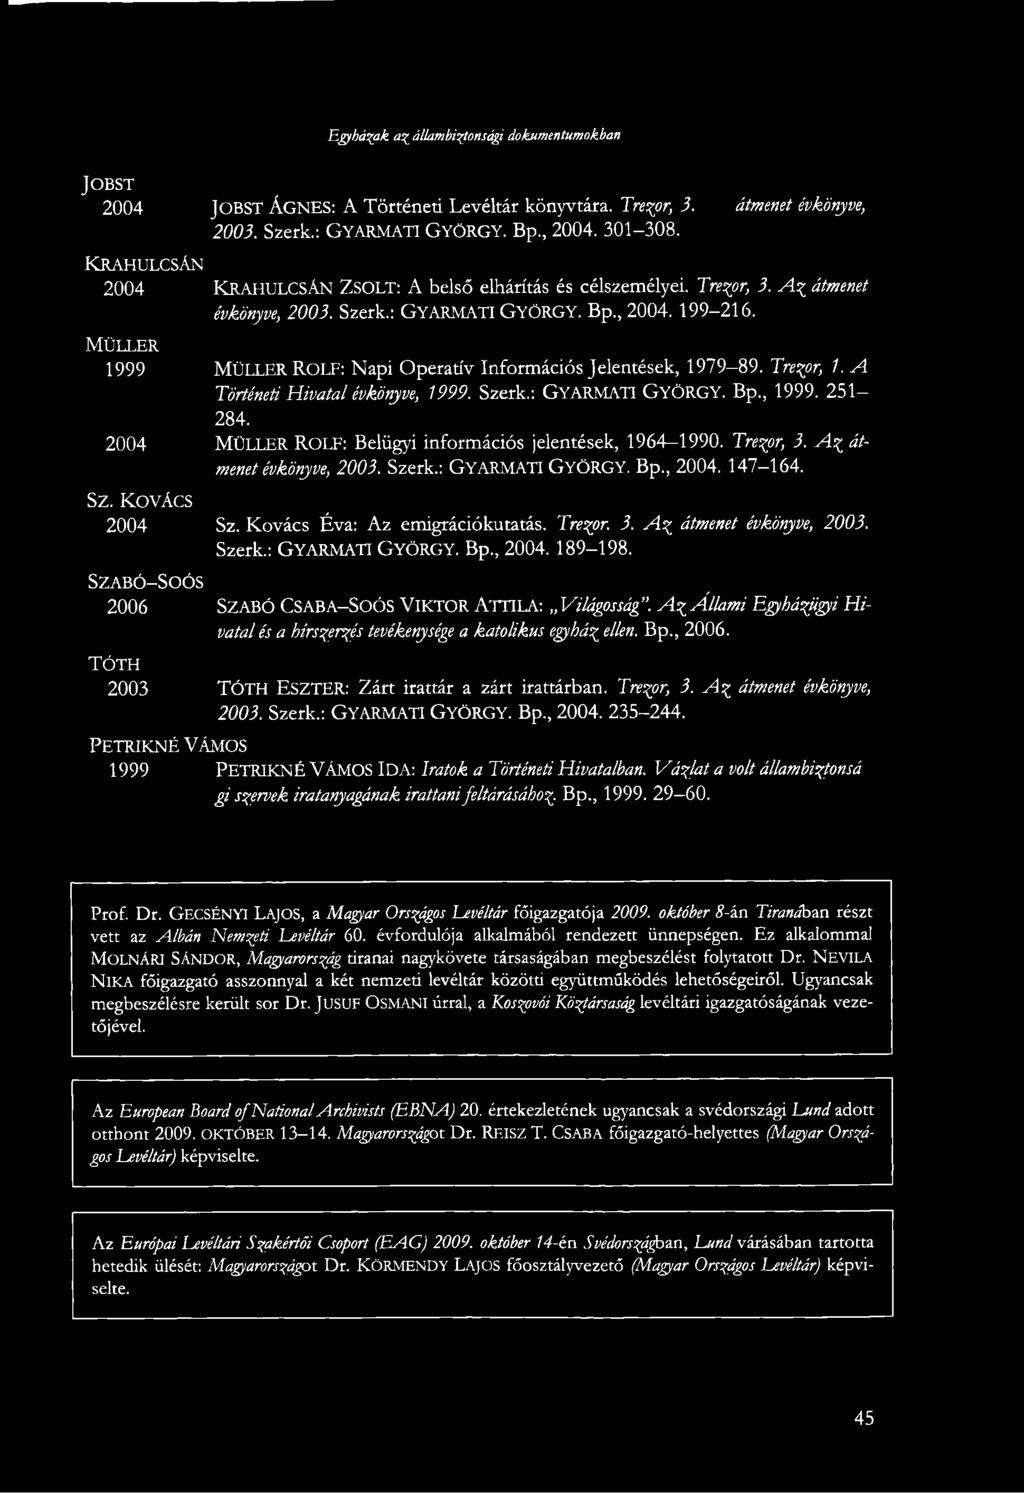 MÜLLER 1999 MÜLLER ROLF: Napi Operatív Információs Jelentések, 1979-89. Trezor, 1. a! Történeti Hivatal évkönyve, 1999. Szerk.: GYARMATI GYÖRGY. Bp., 1999. 251 284.